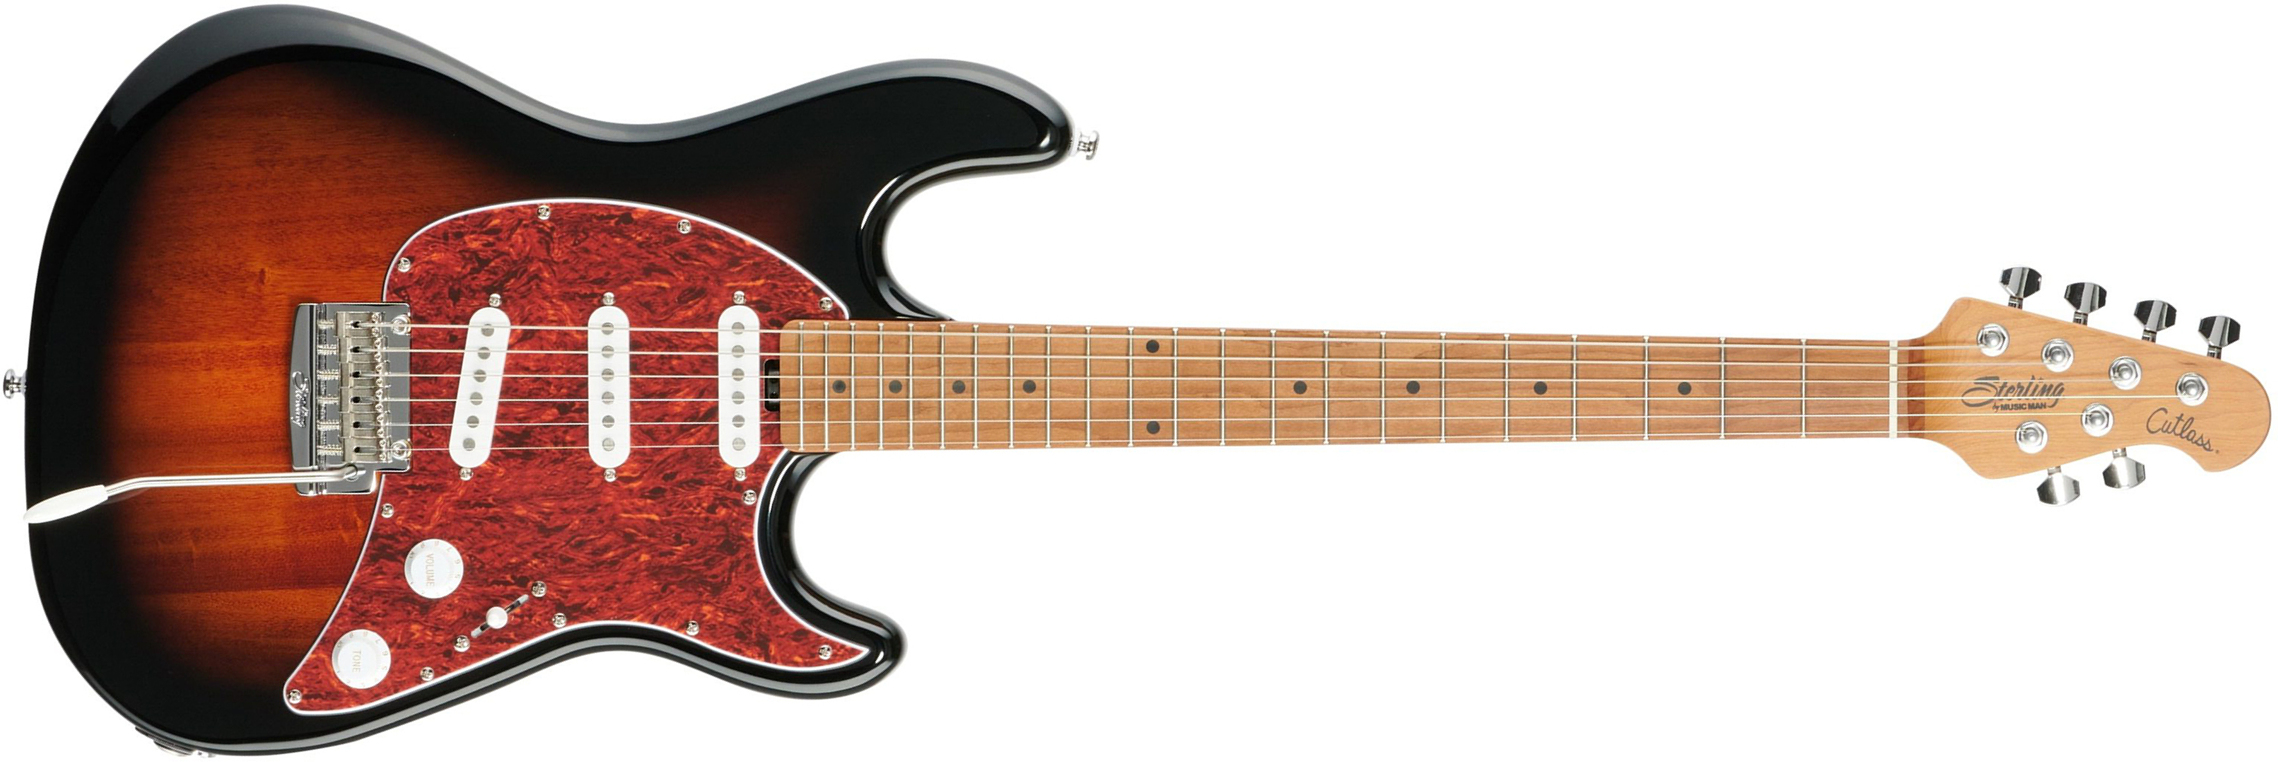 Sterling By Musicman Cutlass Ct50sss 3s Trem Mn - Vintage Sunburst - Elektrische gitaar in Str-vorm - Main picture